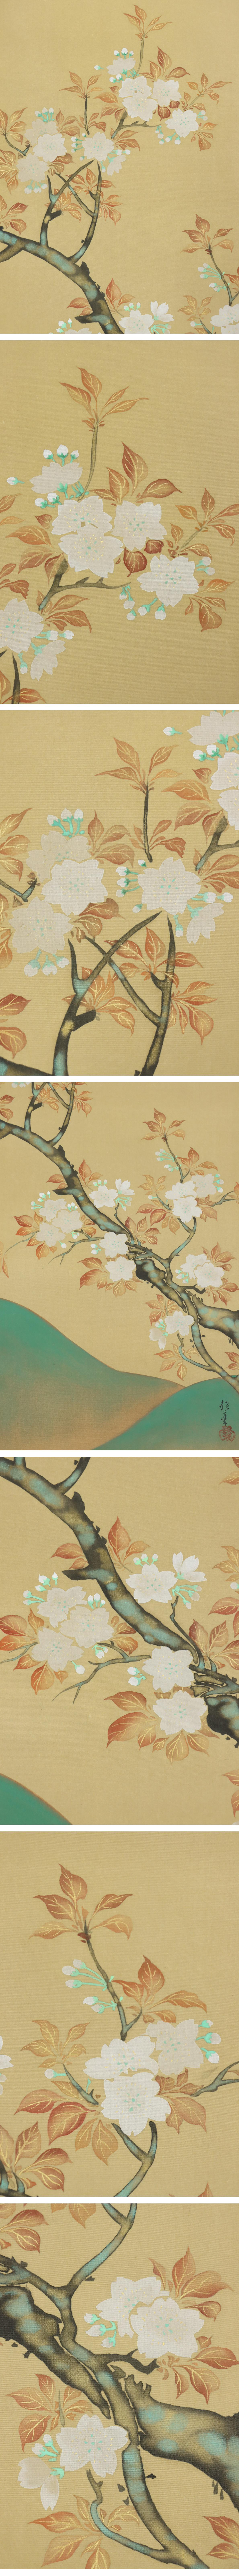 【人気定番HOT】◆酒井抱一◆山桜◆日本画◆手彩色◆二重箱◆絹本◆掛軸◆m561 花鳥、鳥獣